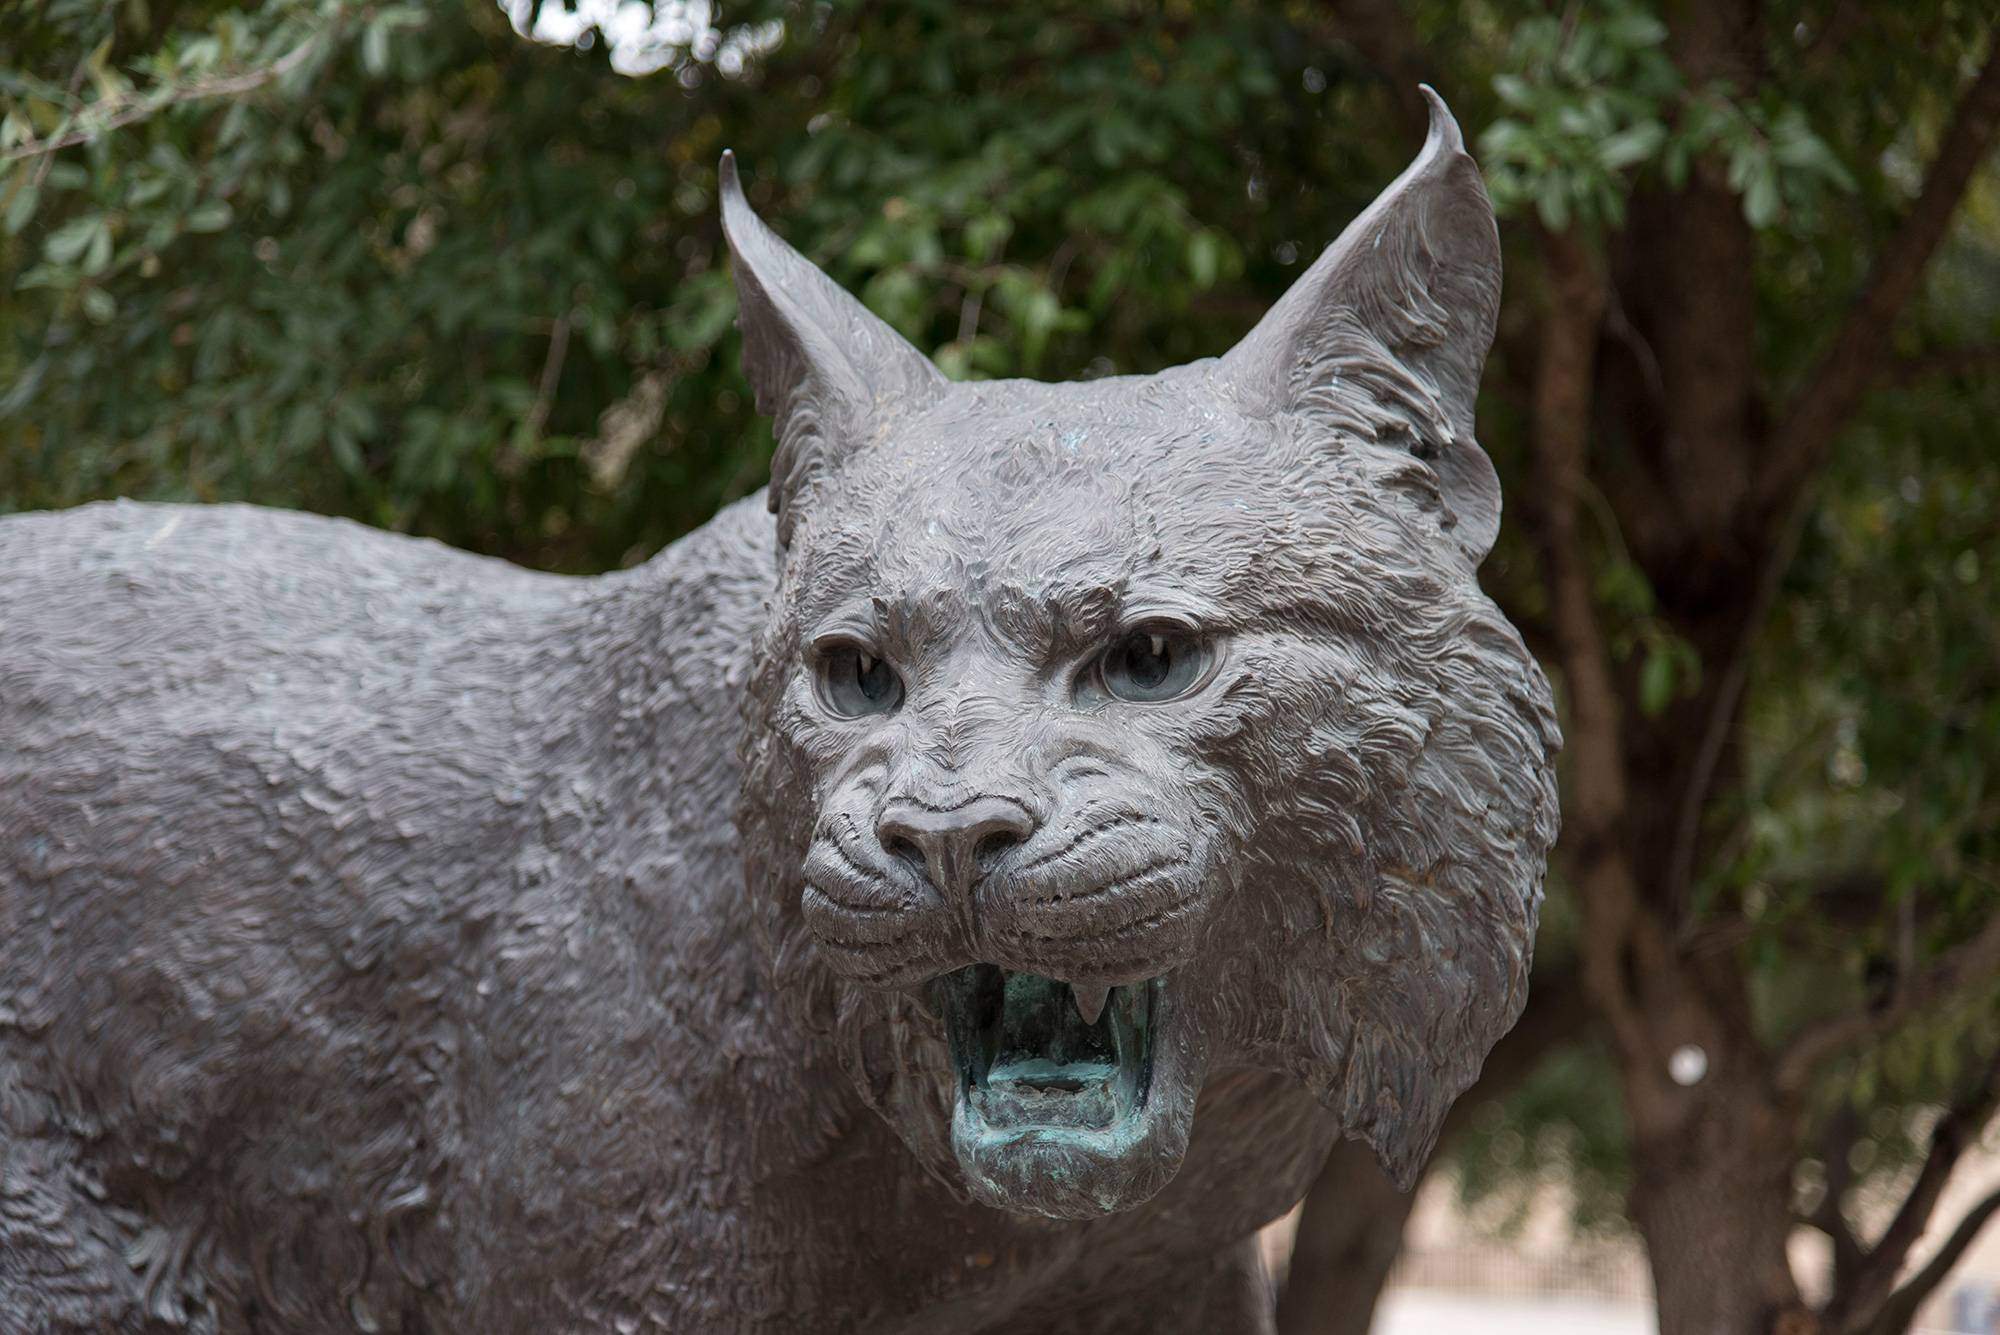 bobcat statue